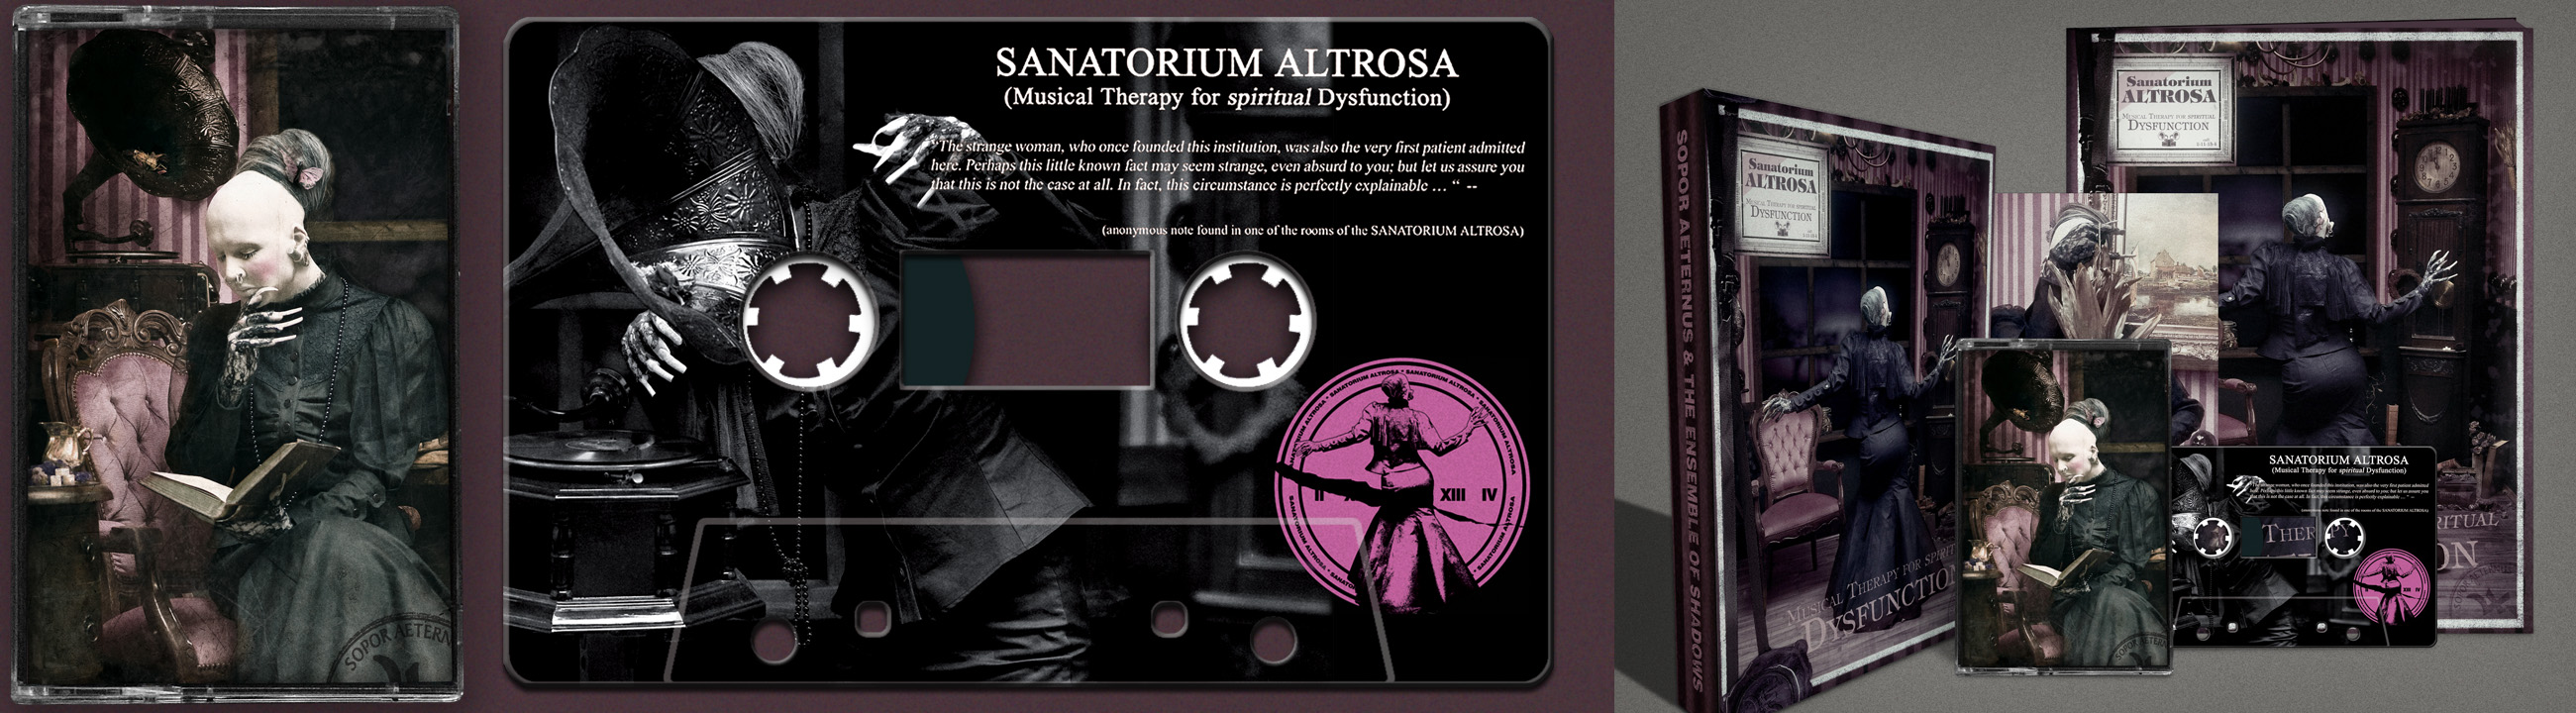 Sanatorium_Tape2